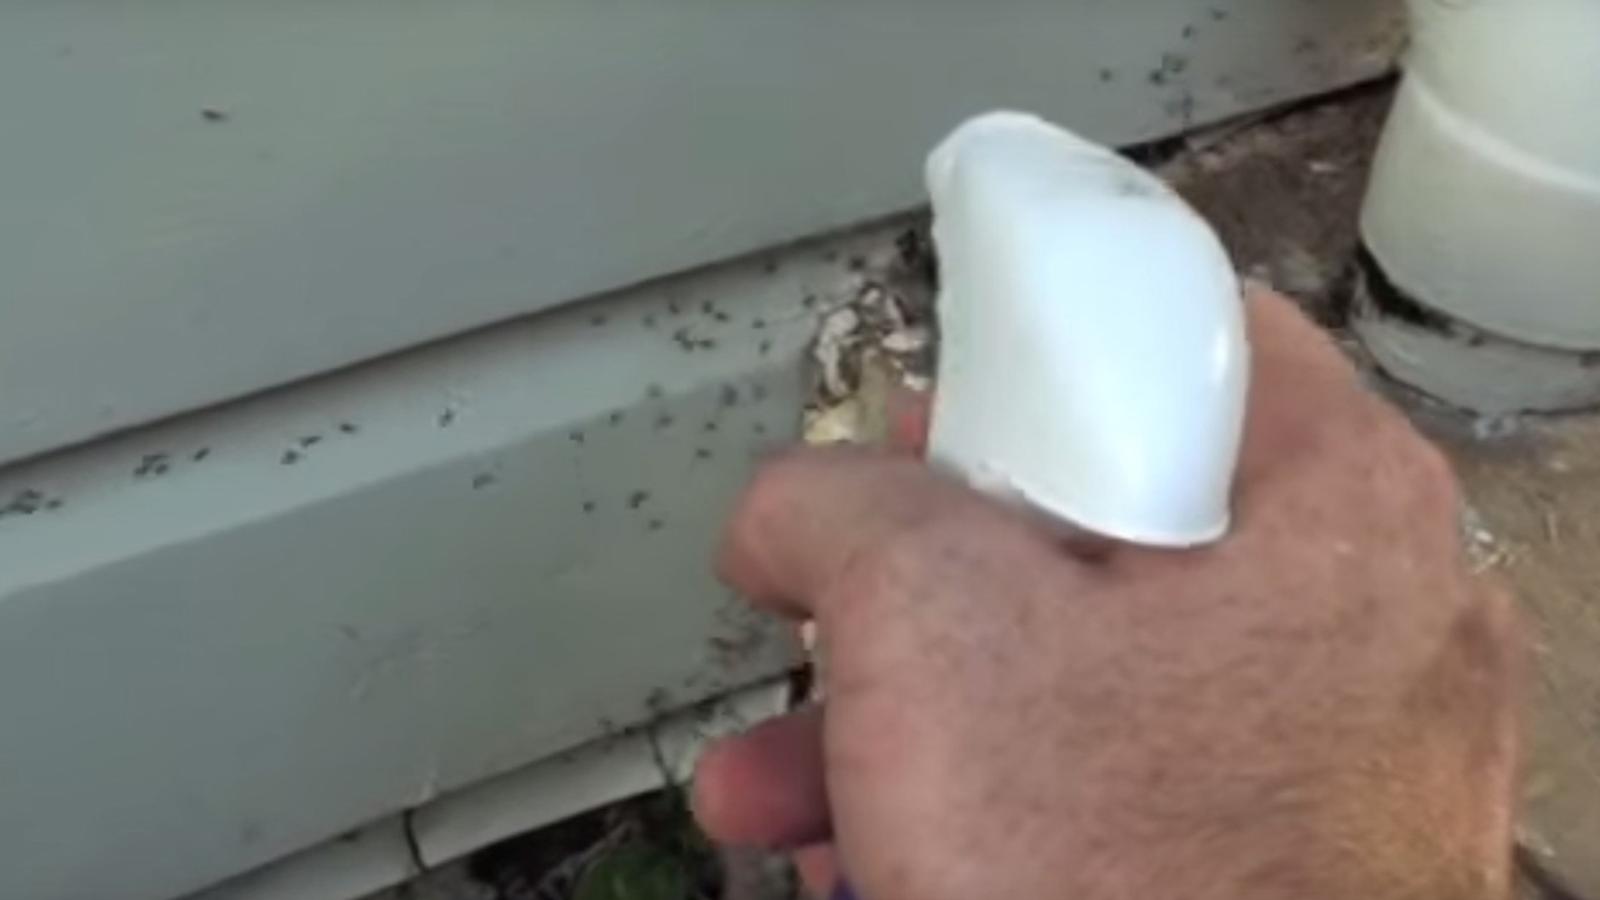 Un jardinier vaporise cette mixture autour de sa maison et extermine les fourmis en quelques heures seulement!